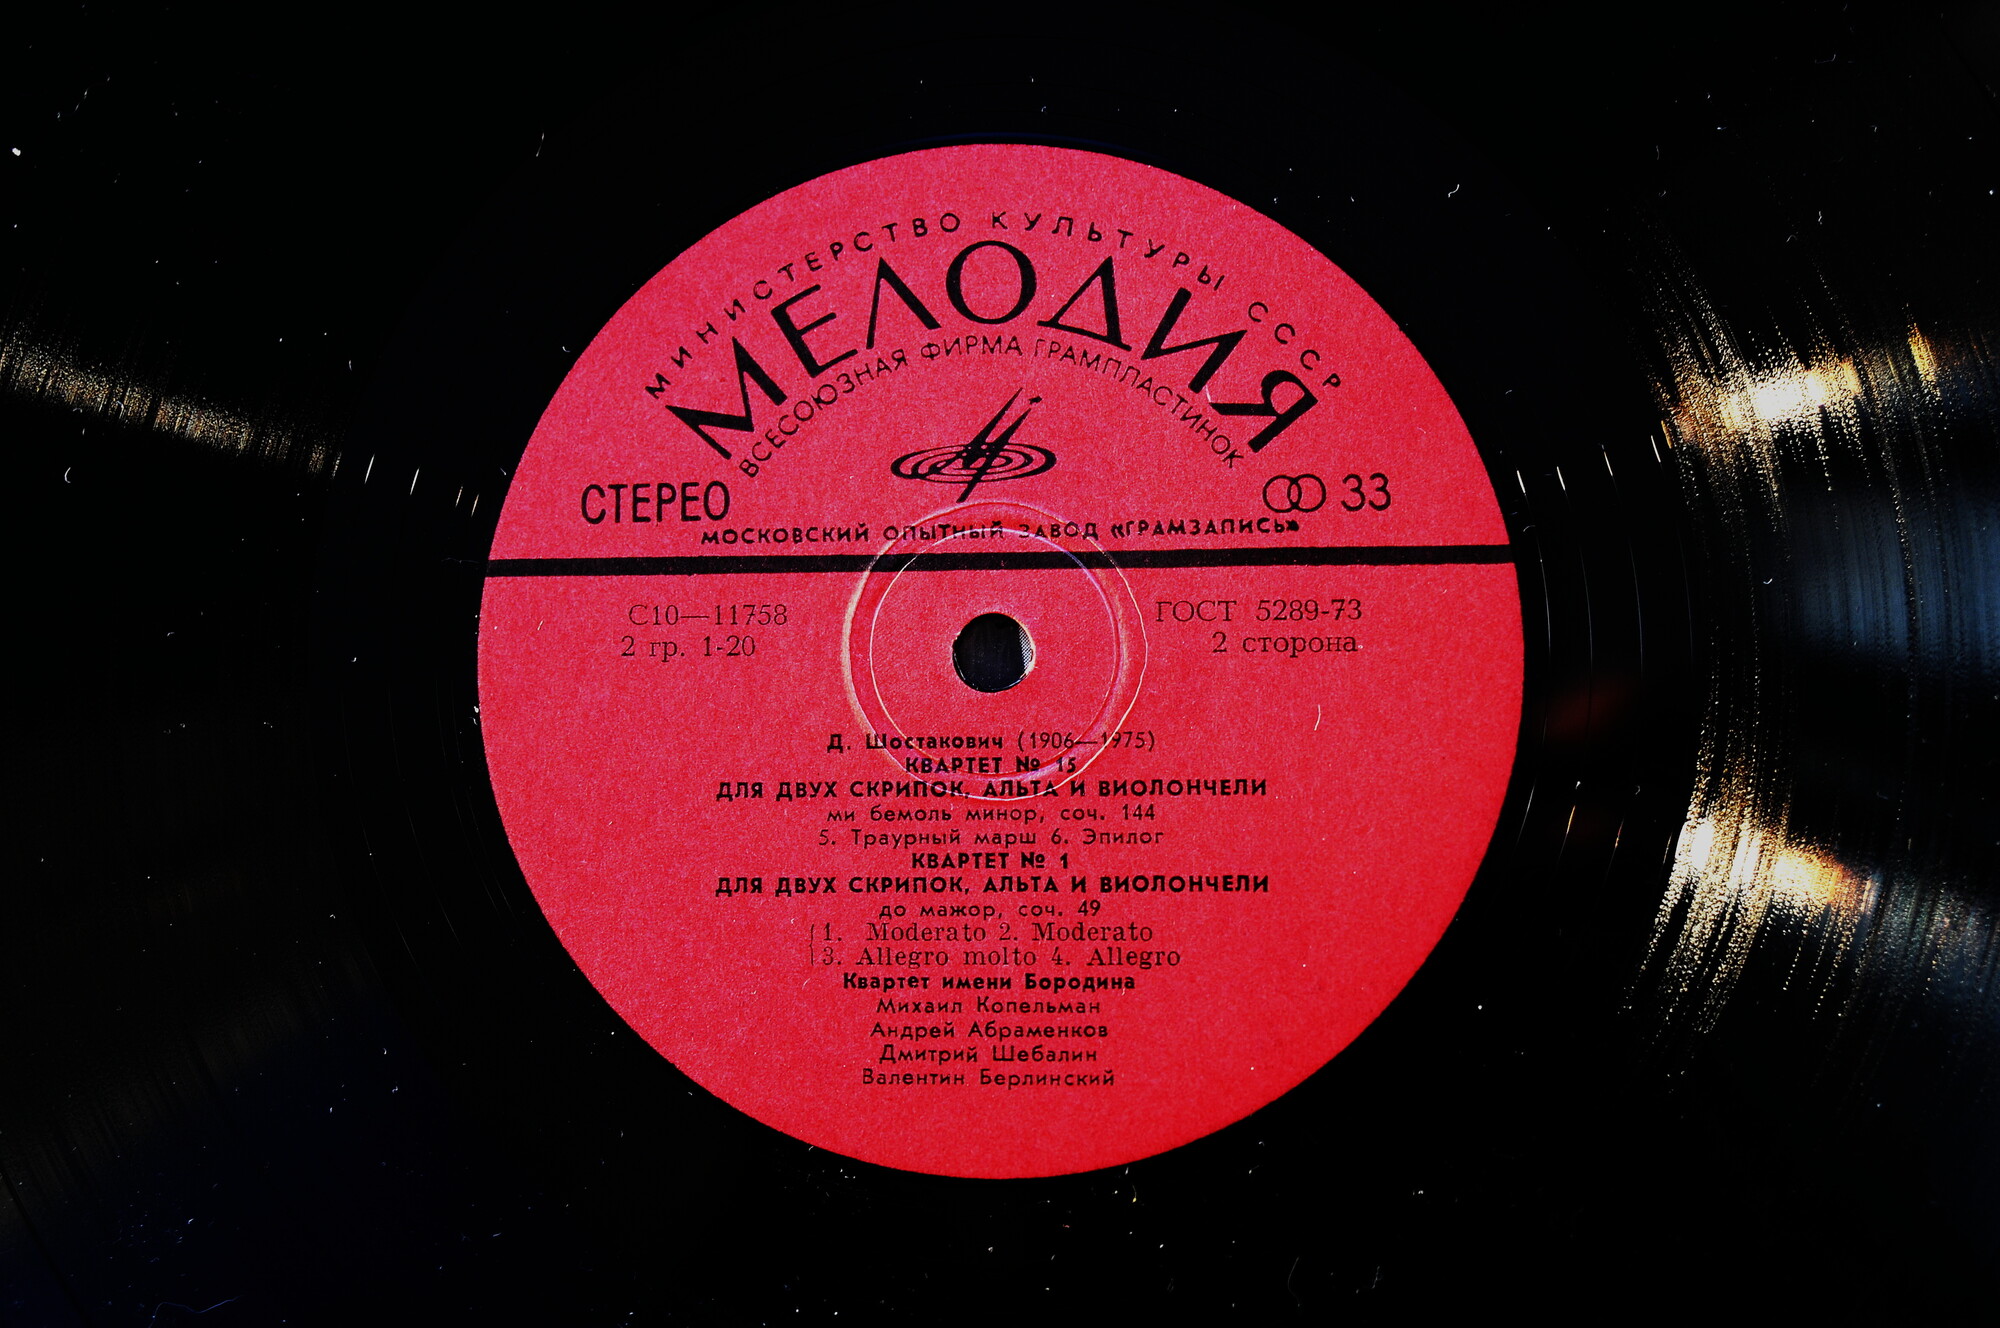 Д. ШОСТАКОВИЧ (1906 — 1975): Квартеты № 15, № 1 для двух скрипок, альта и виолончели (Квартет им. Бородина)